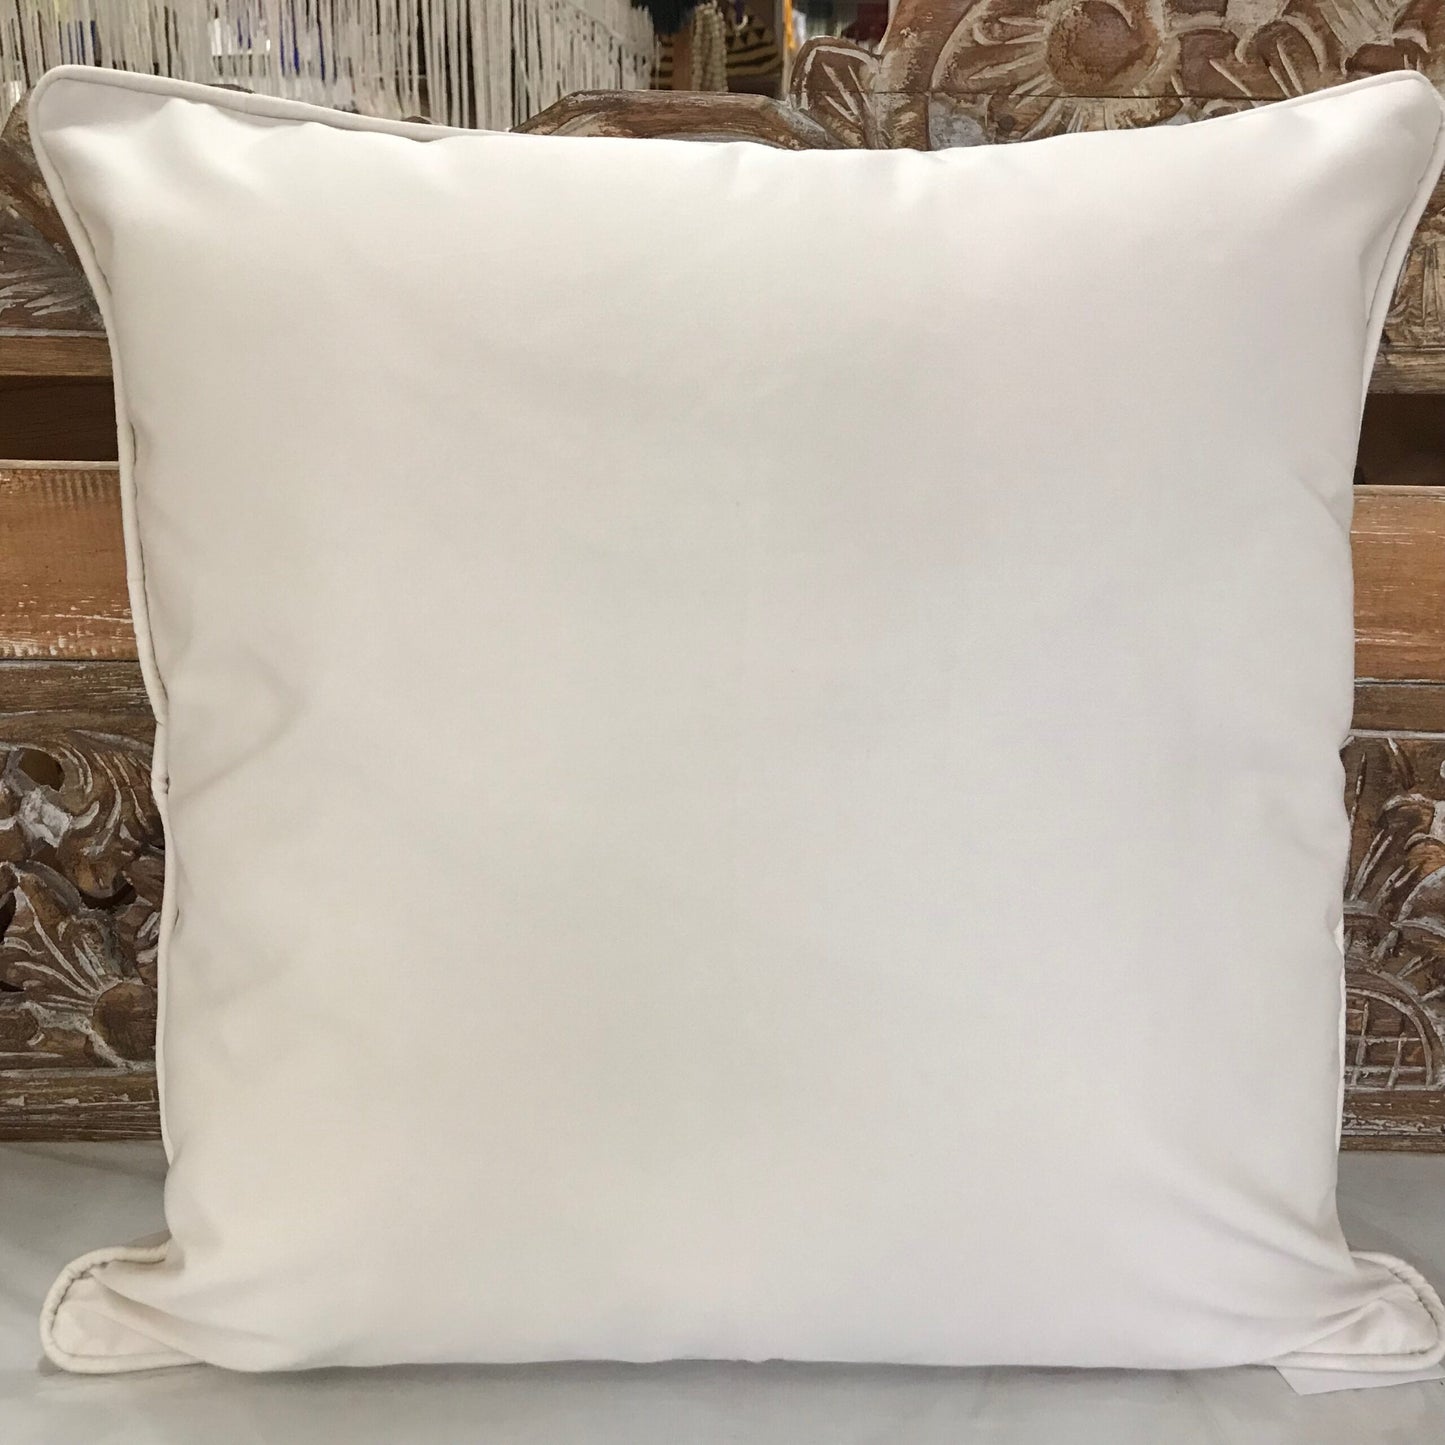 Cotton Drill Cushion Cover 45cm x 45cm